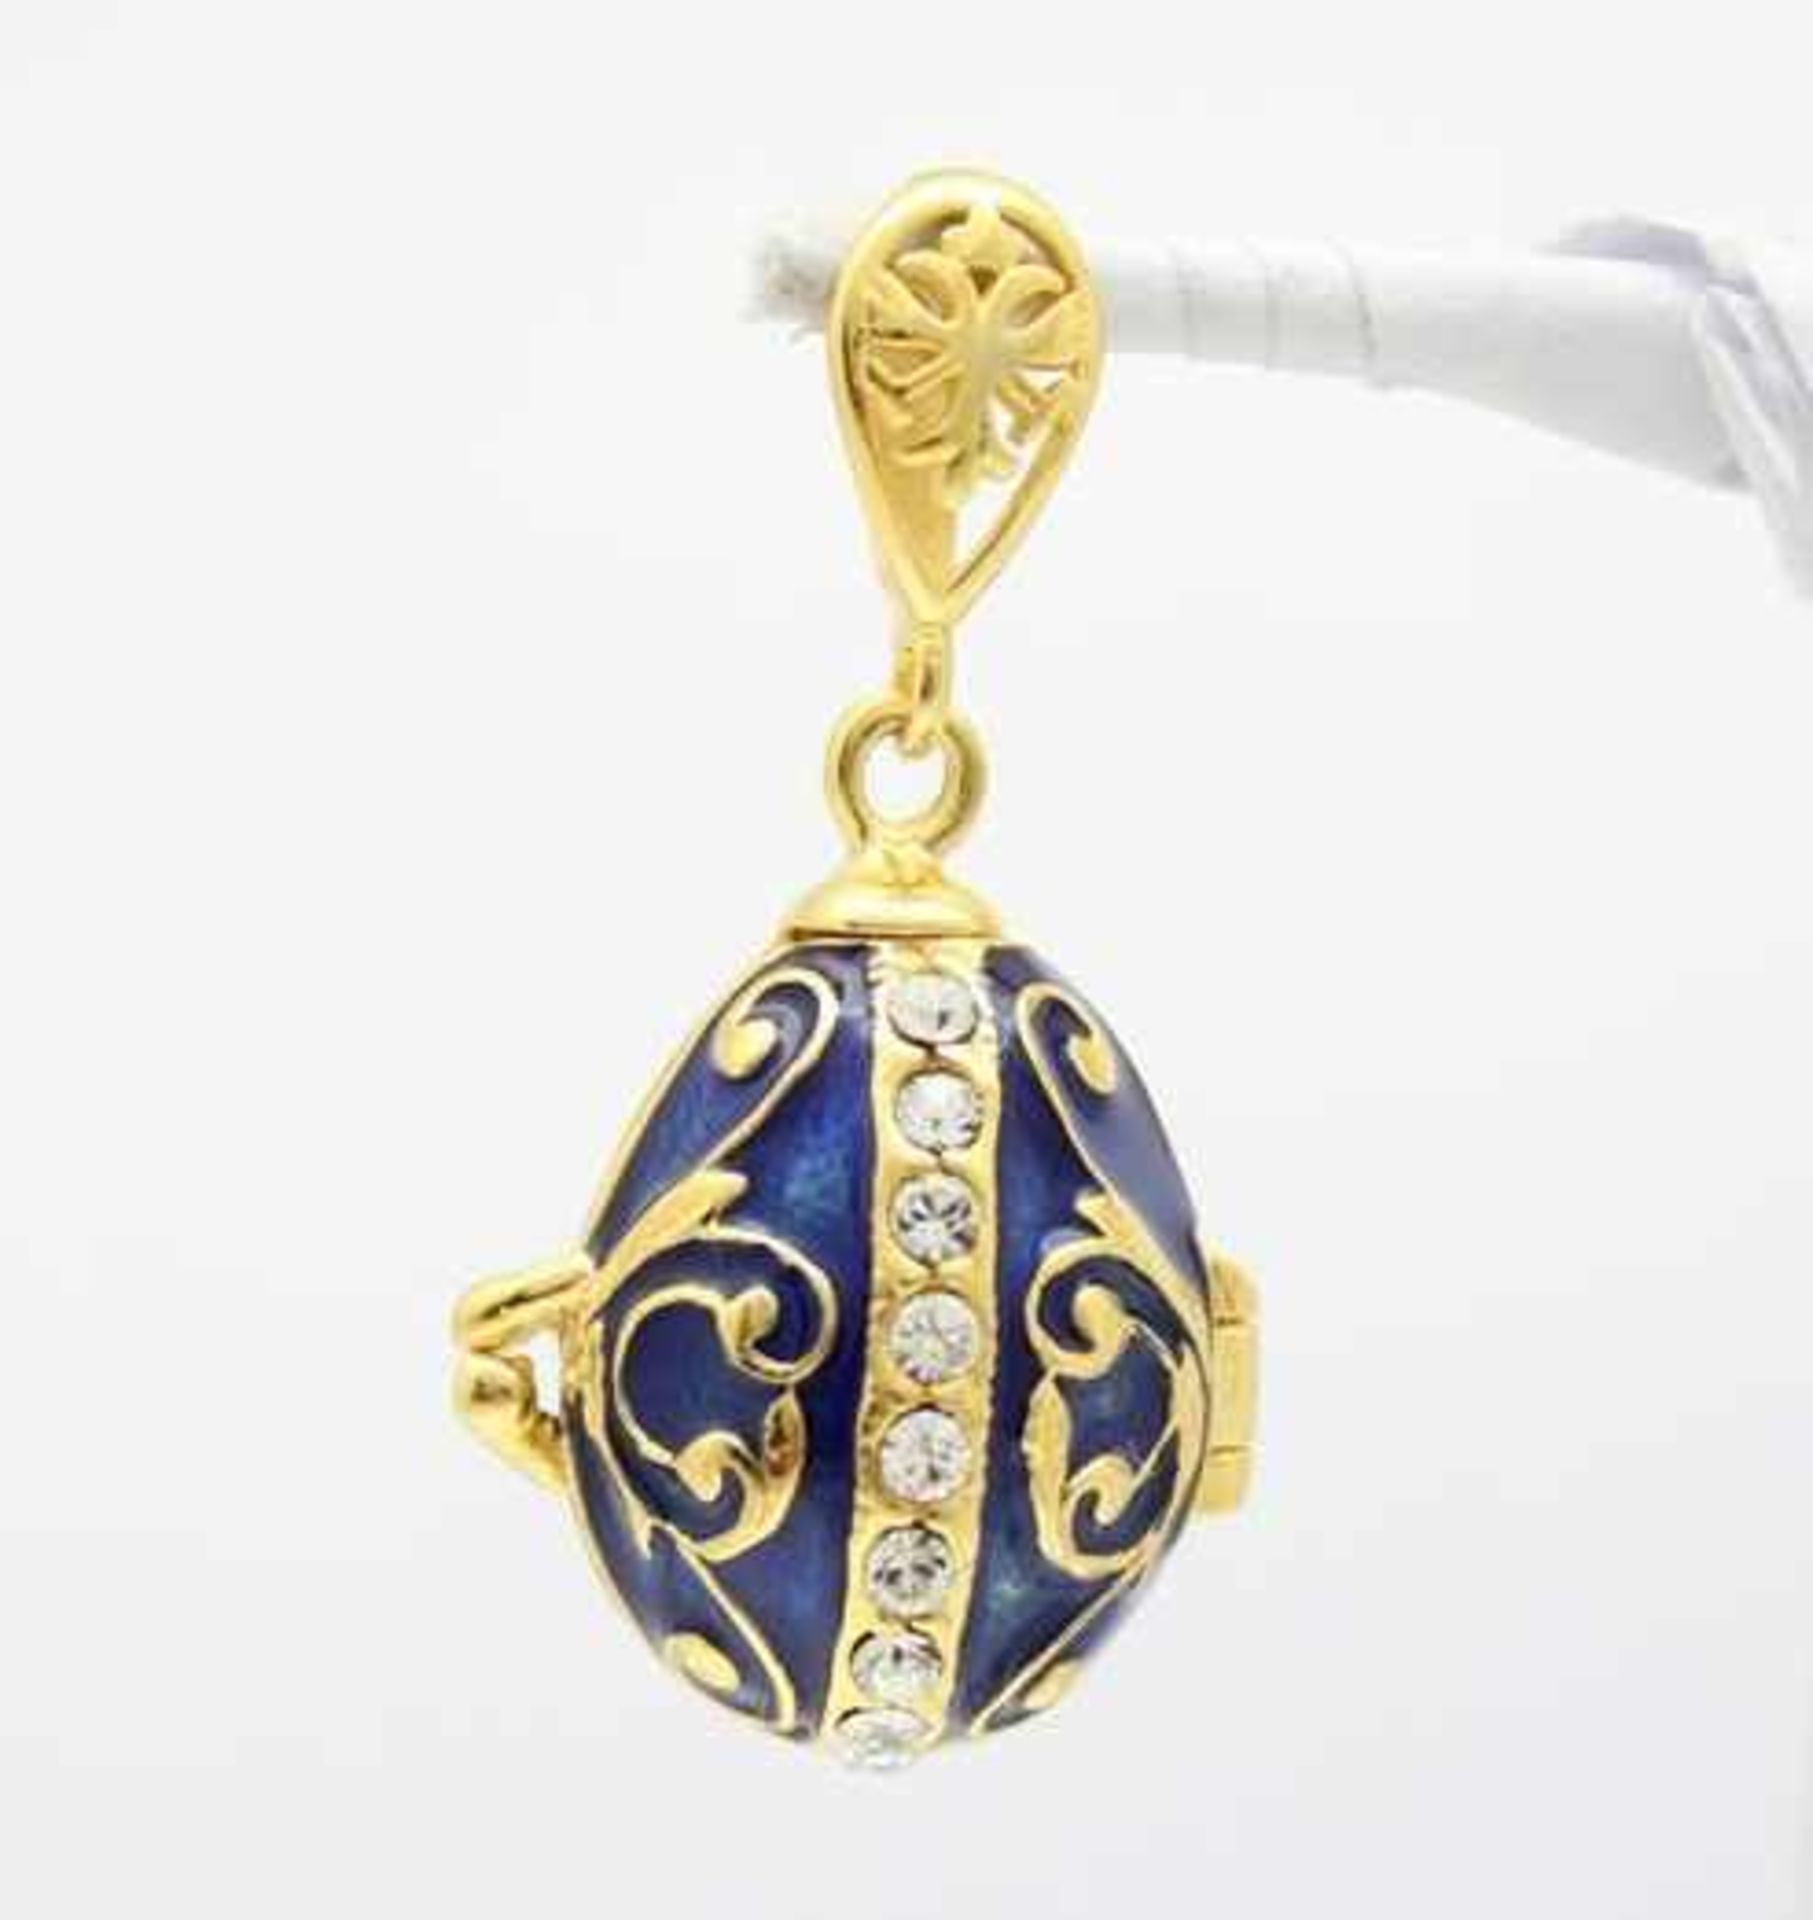 Blaues Ei. Kettenanhänger in russischem Faberge-Stil. 925 Sterling Silber, farbig emailliert und mit